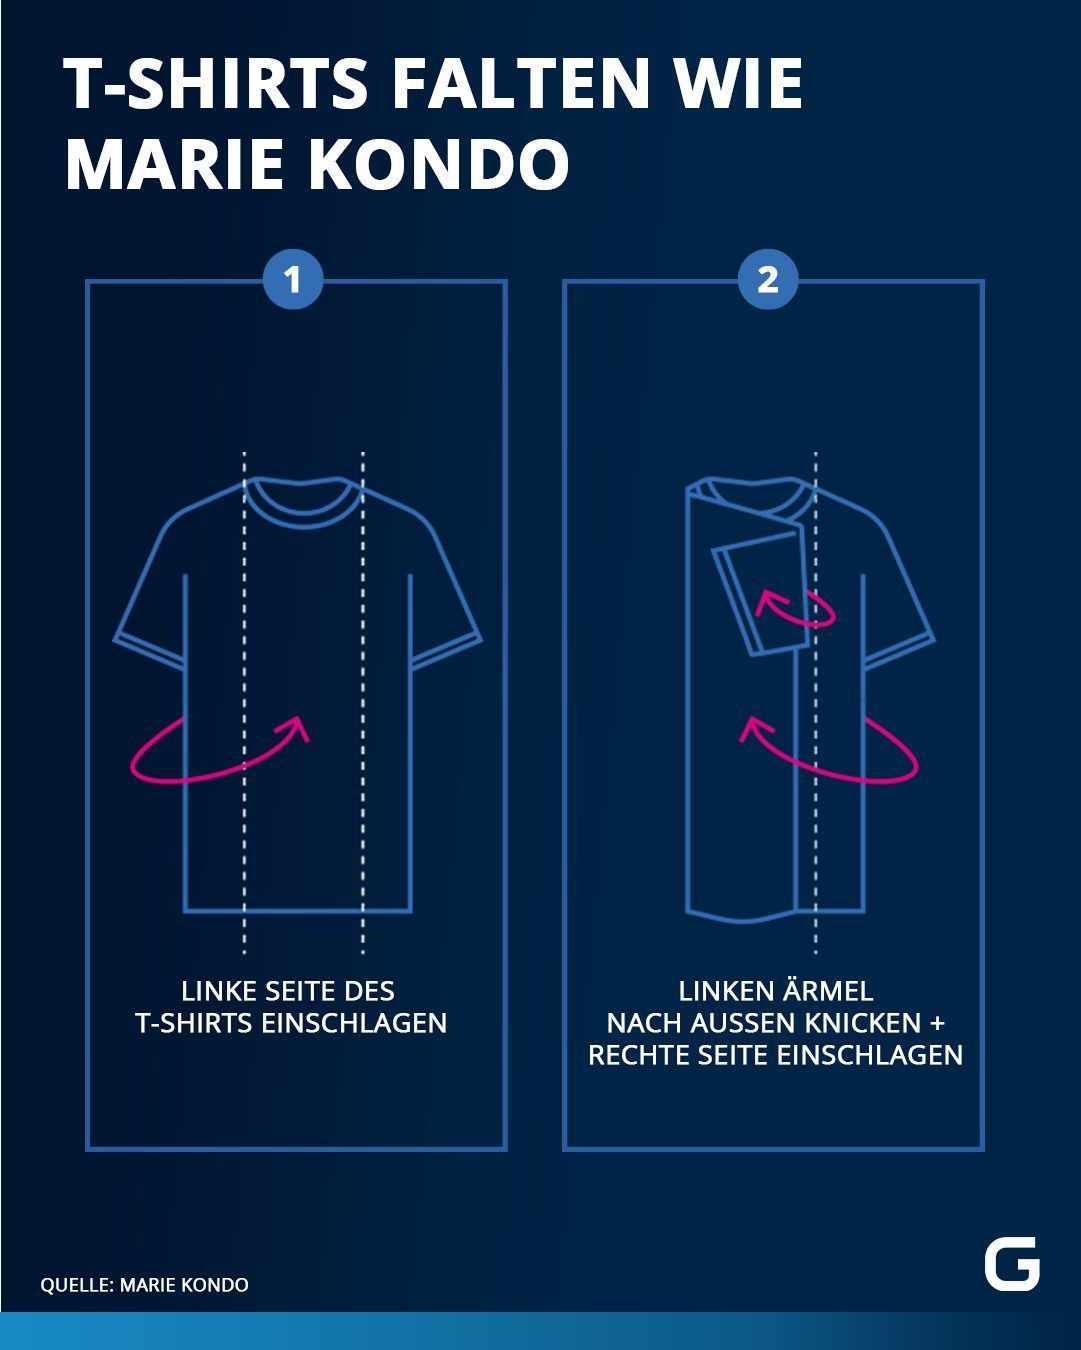 T-Shirts falten wie Marie Kondo: Hier gibt's die Schritt-für-Schritt-Anleitung.